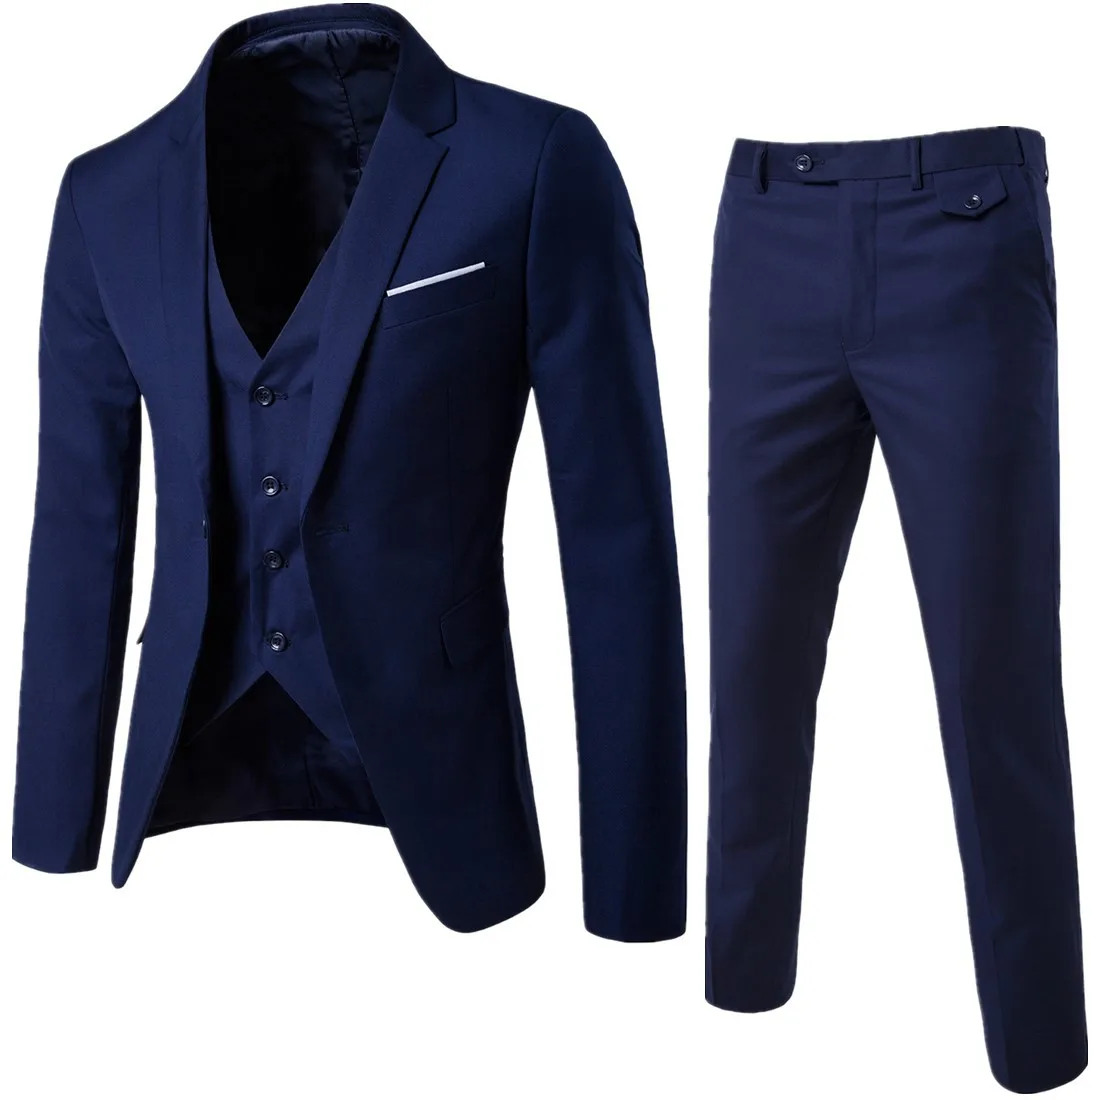 Куртка+ брюки+ жилет) Роскошные мужские повседневные Свадебные смокинги мужская одежда мужской тонкий костюм модные мужские деловые вечерние костюмы - Цвет: Navy blue 3-pcs set